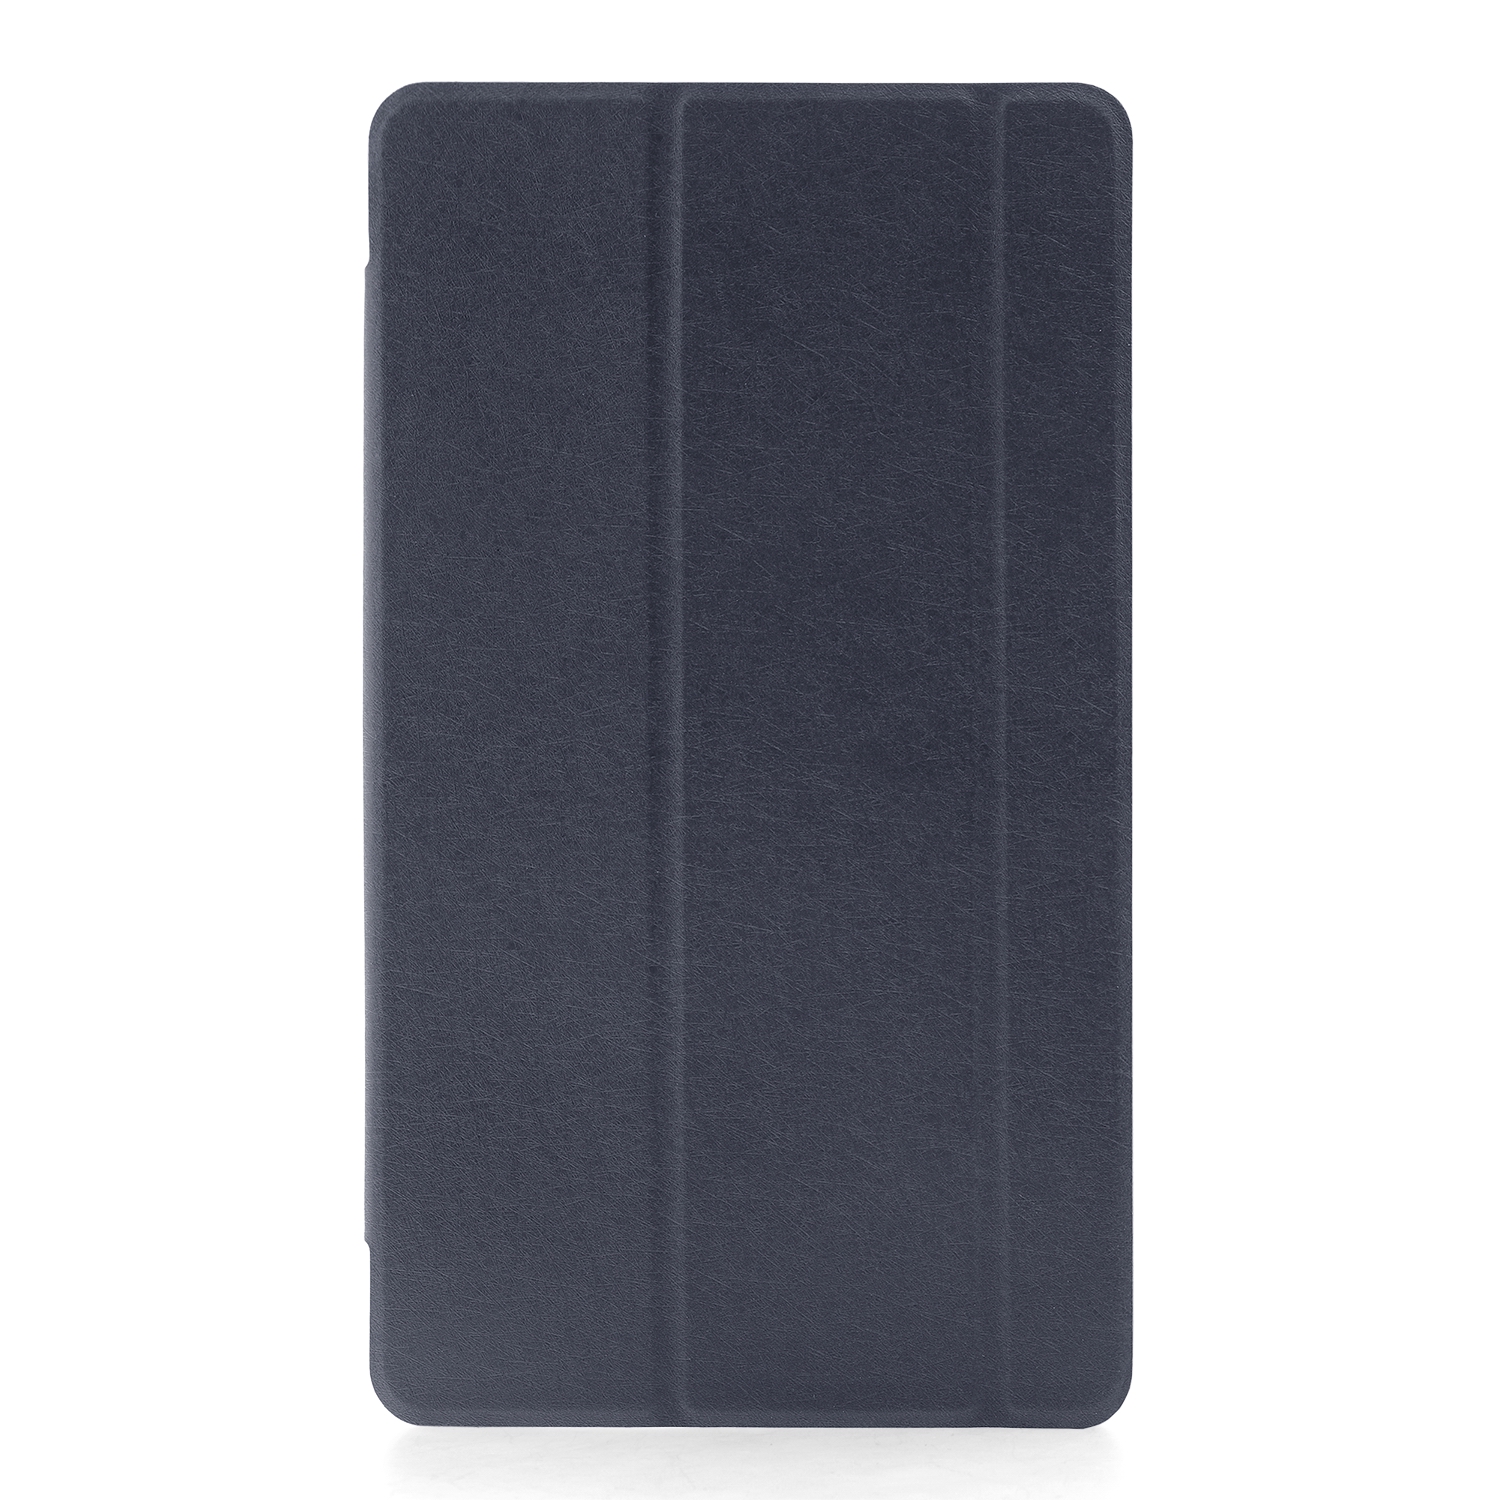 Чехол откидной Huawei MediaPad T3 8.0 Trans Cover синий